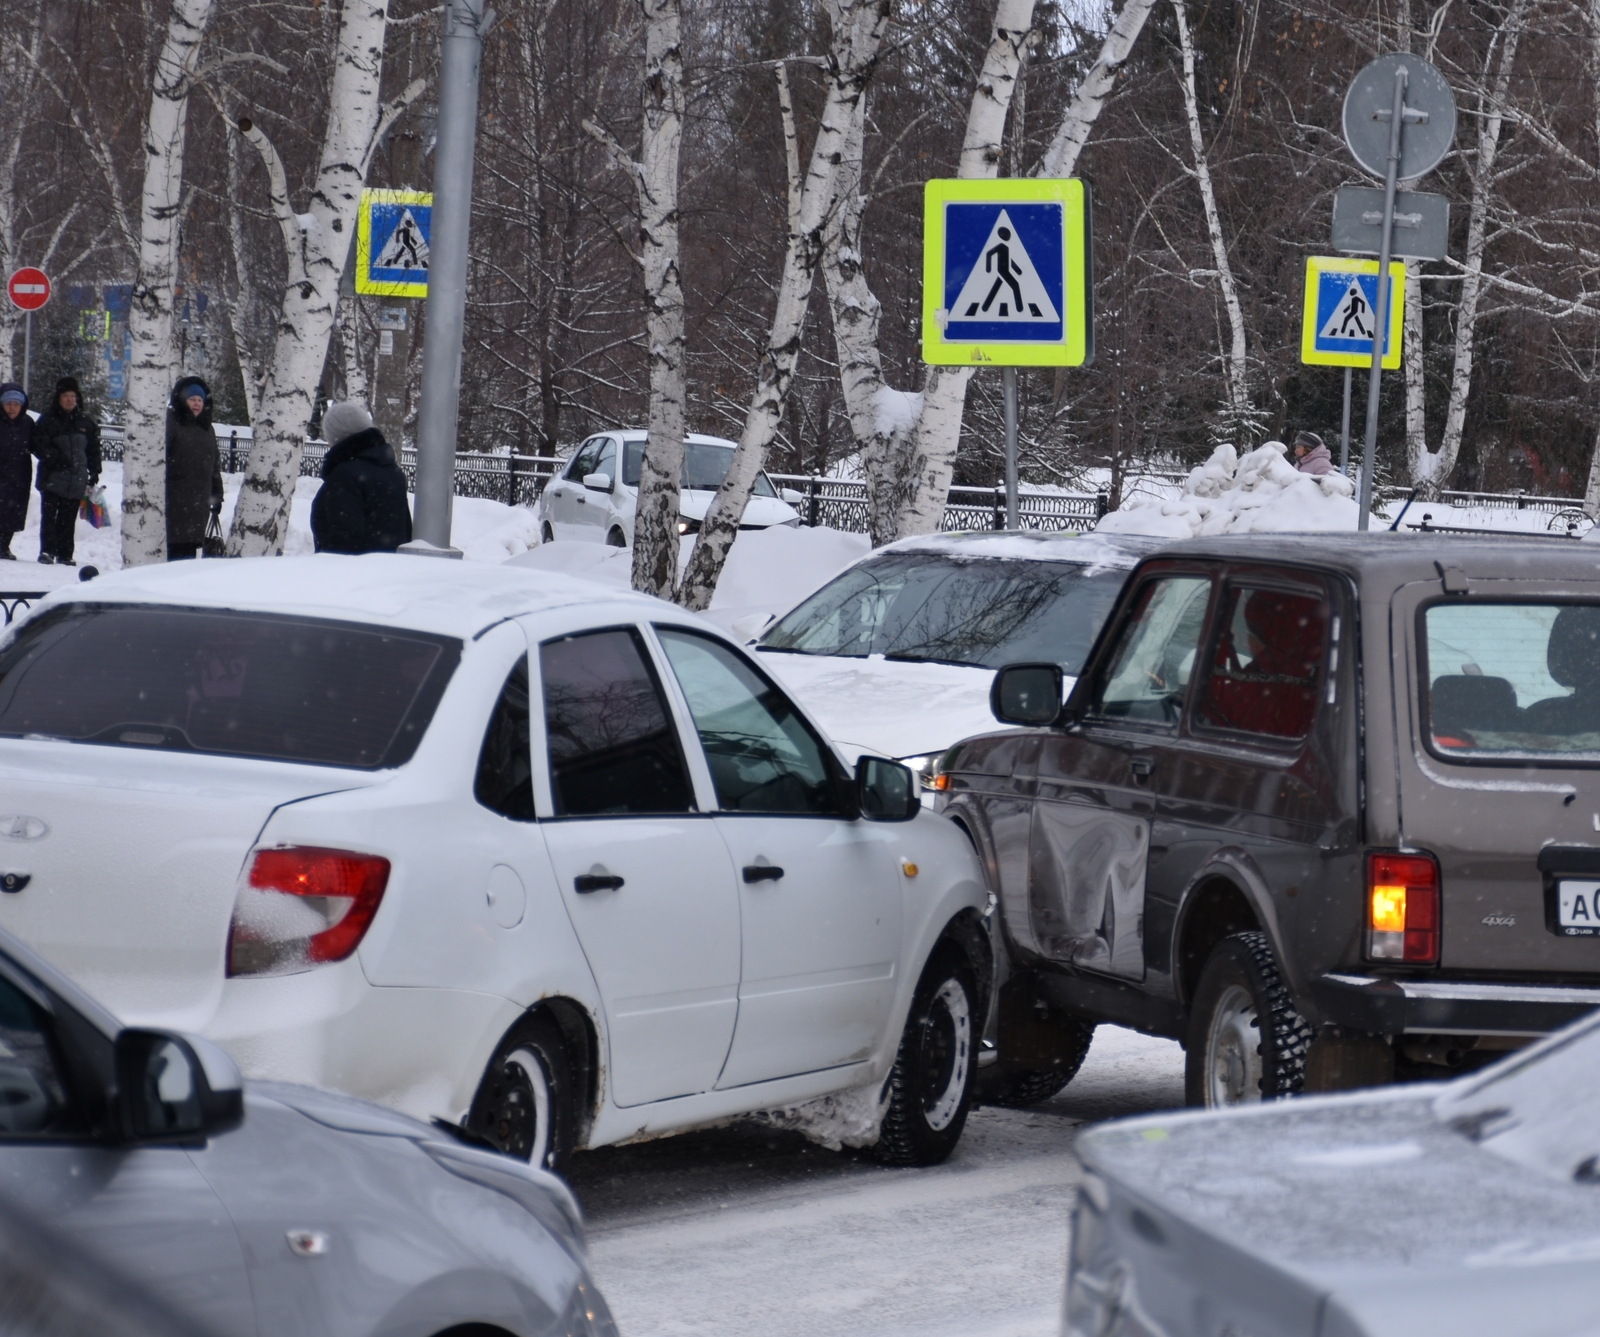 23 ДТП зарегистрировано в Мелеузе и Мелеузовском районе с 29 января по 4 февраля